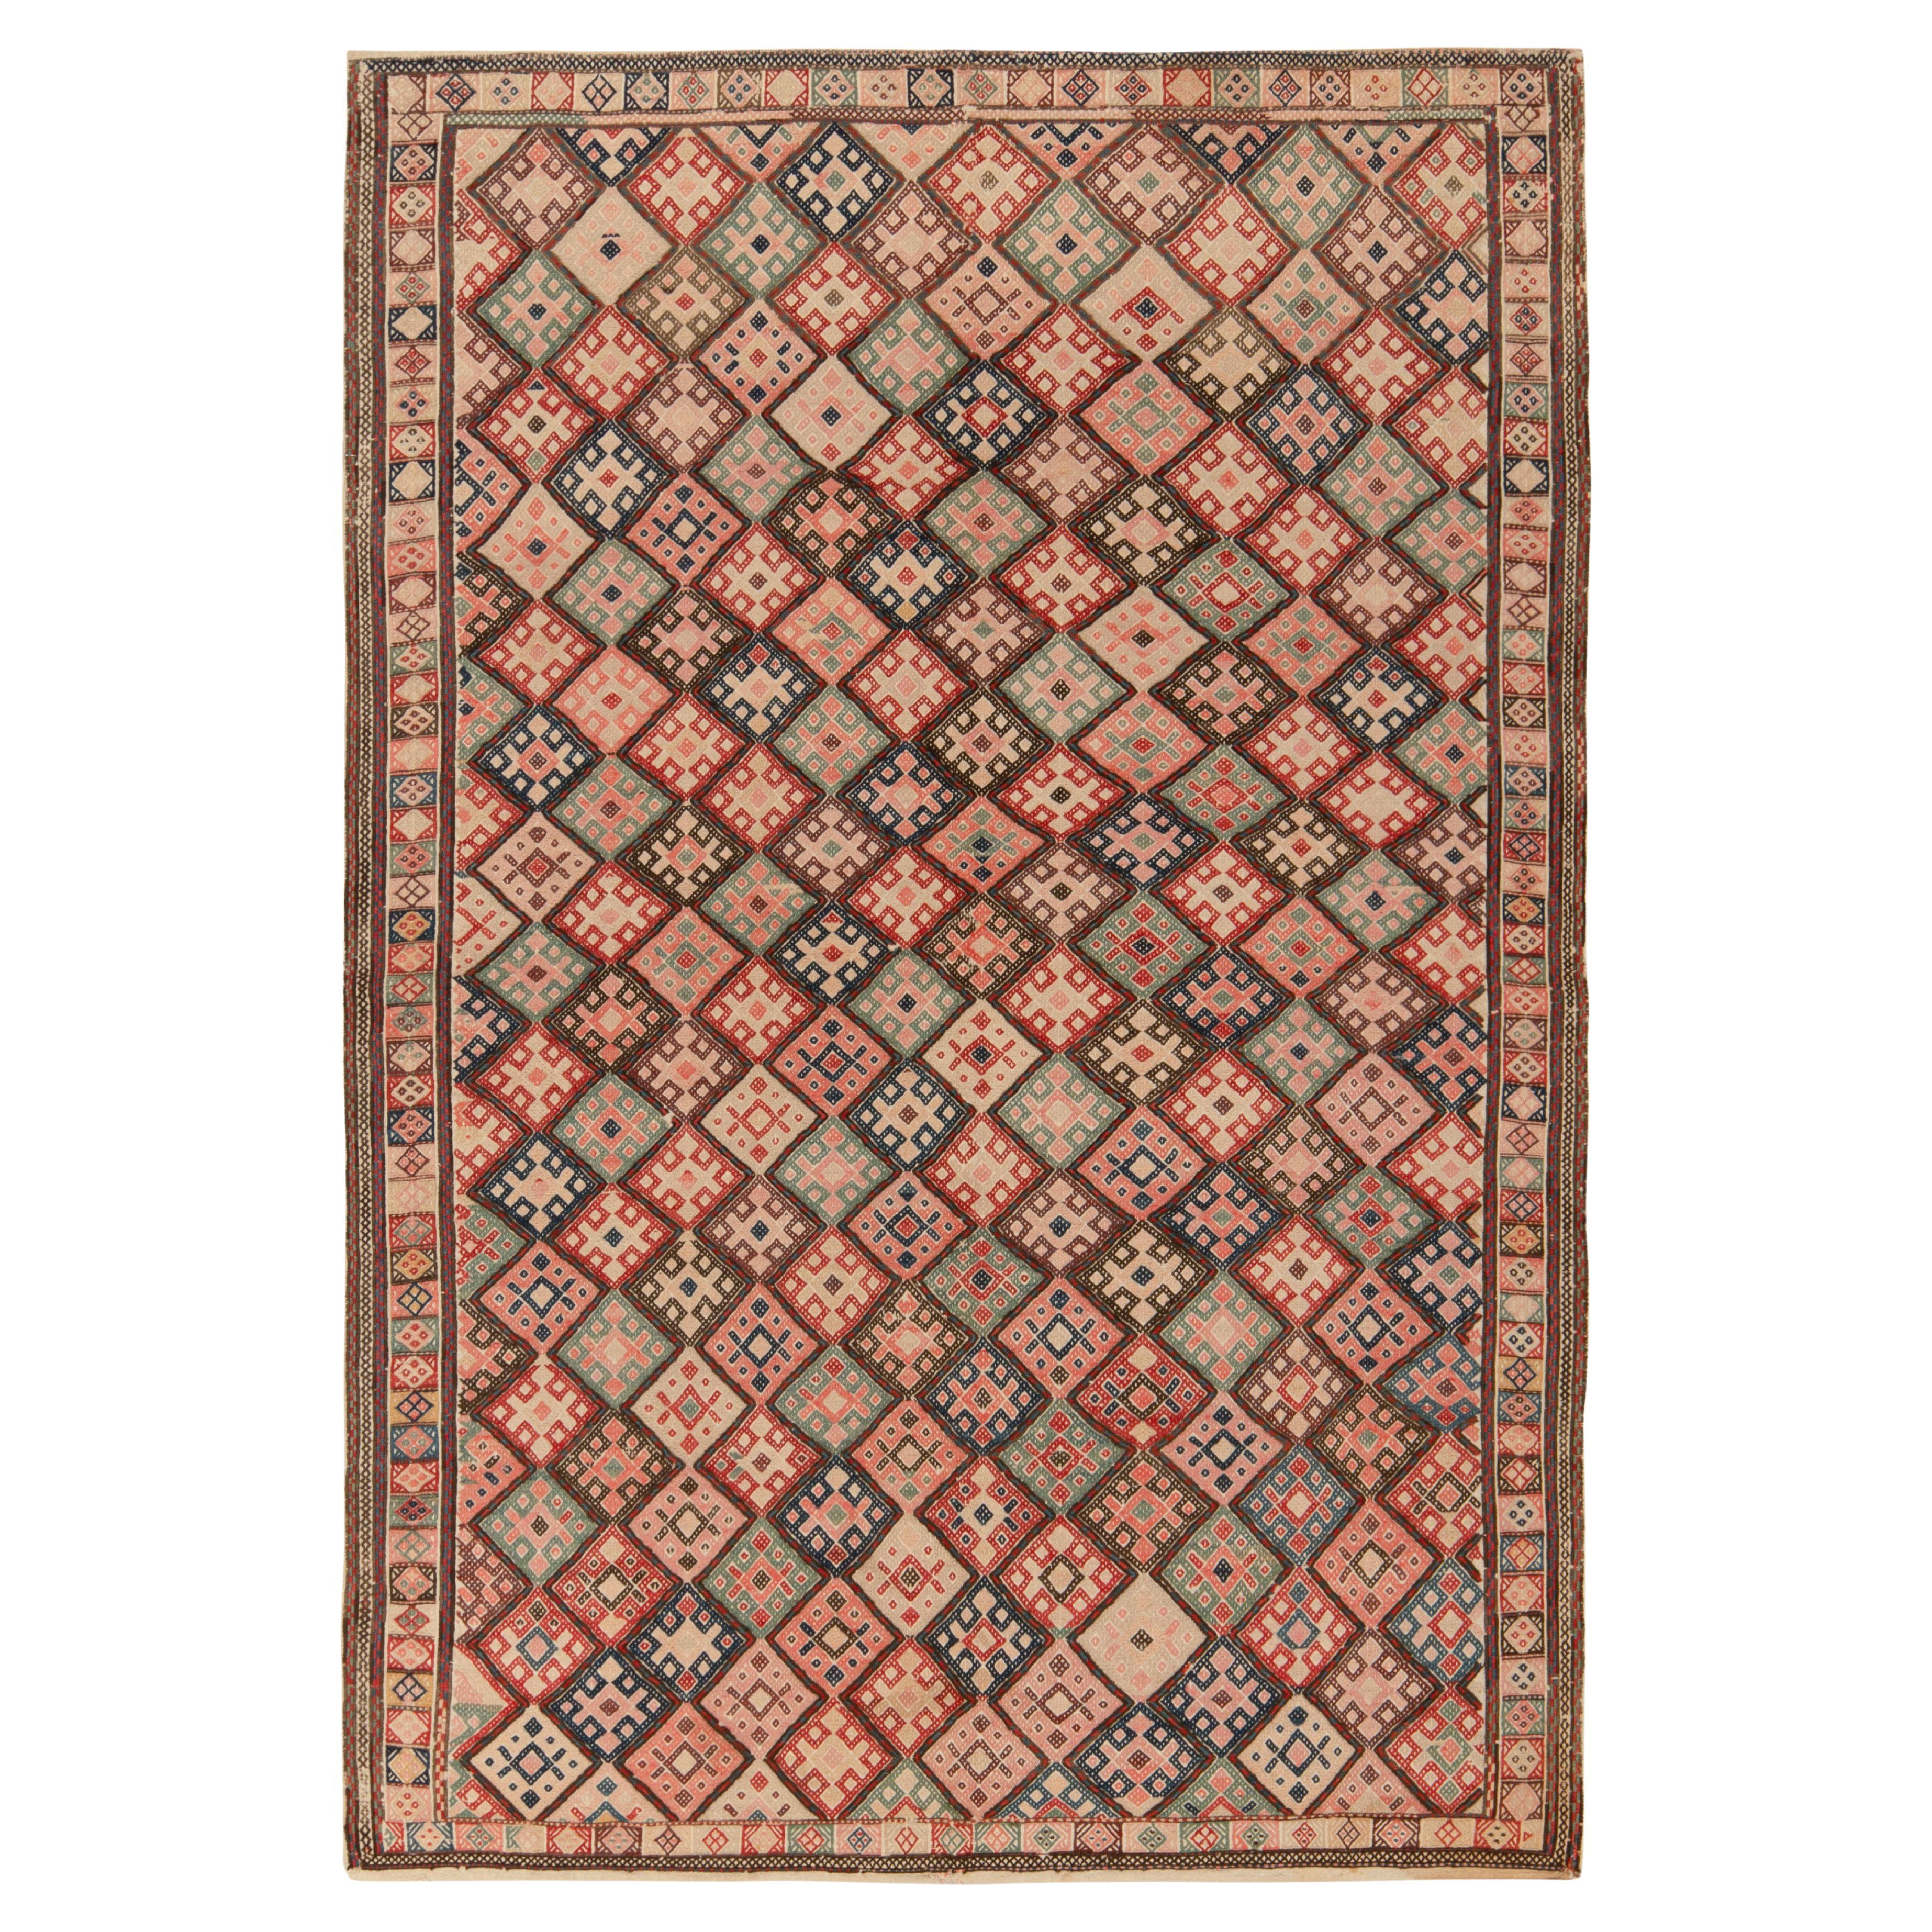 Vintage Turkish Kilim Rug in Beige, Pink Tribal Geometric Pattern by Rug & Kilim